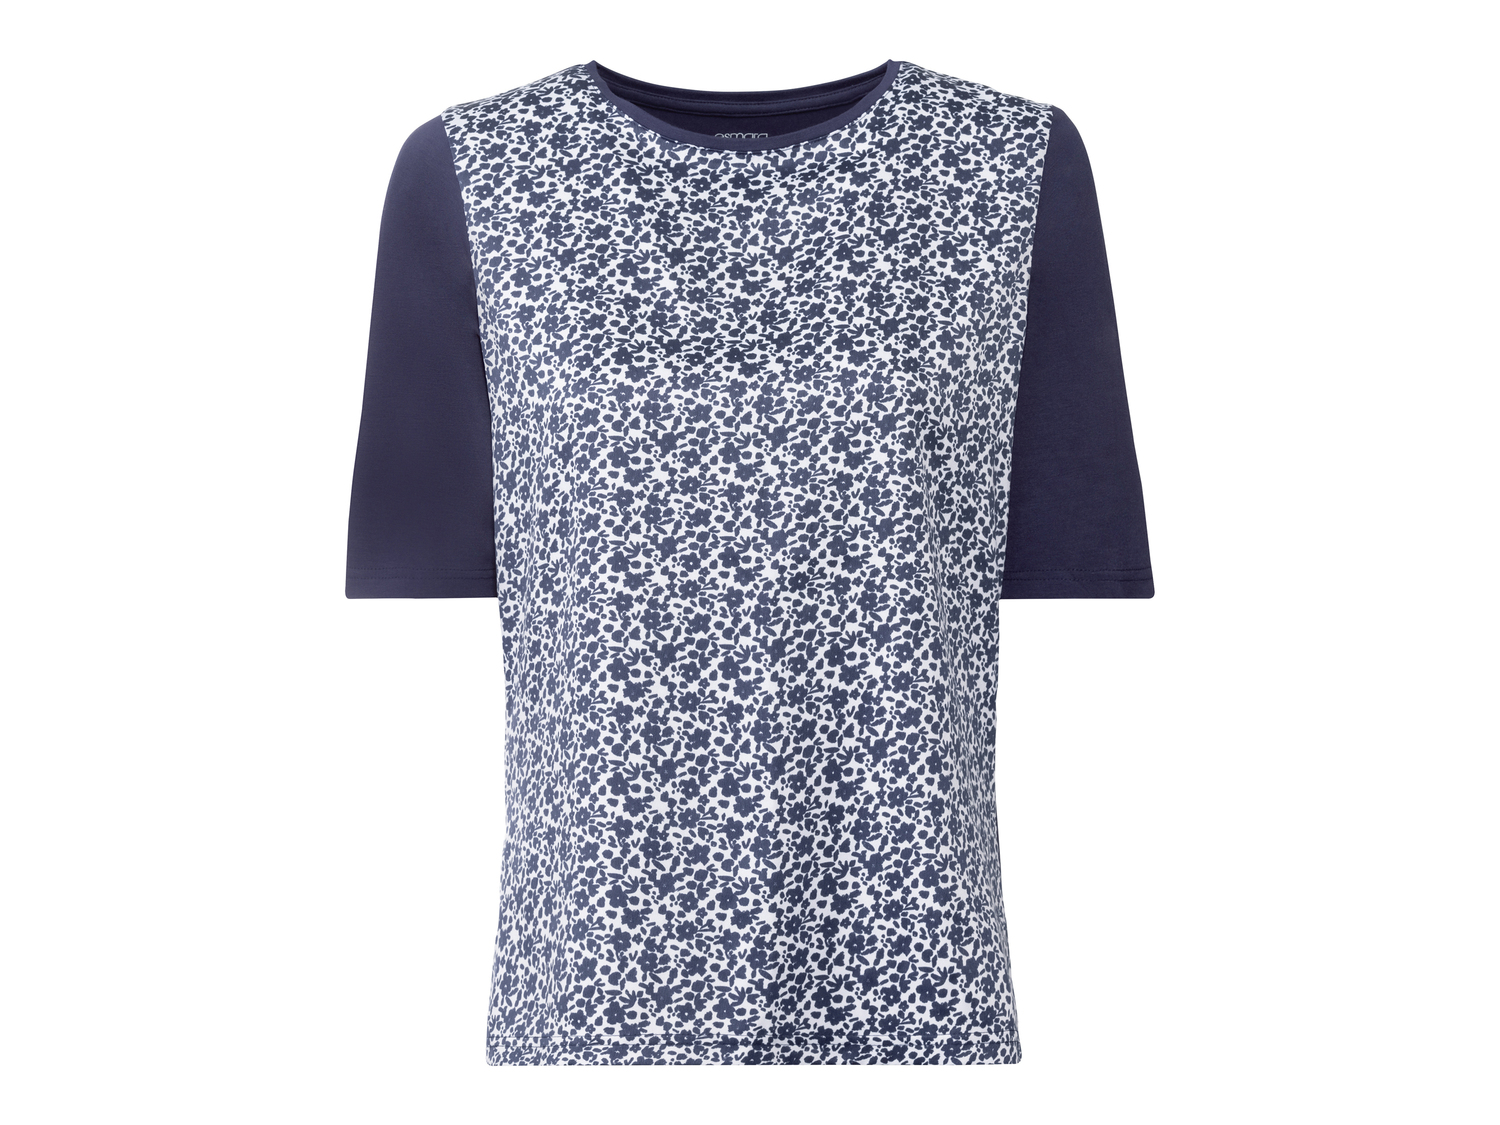 T-shirt da donna Esmara, prezzo 6.99 &#8364; 
Misure: S-L
Taglie disponibili

Caratteristiche

- ...